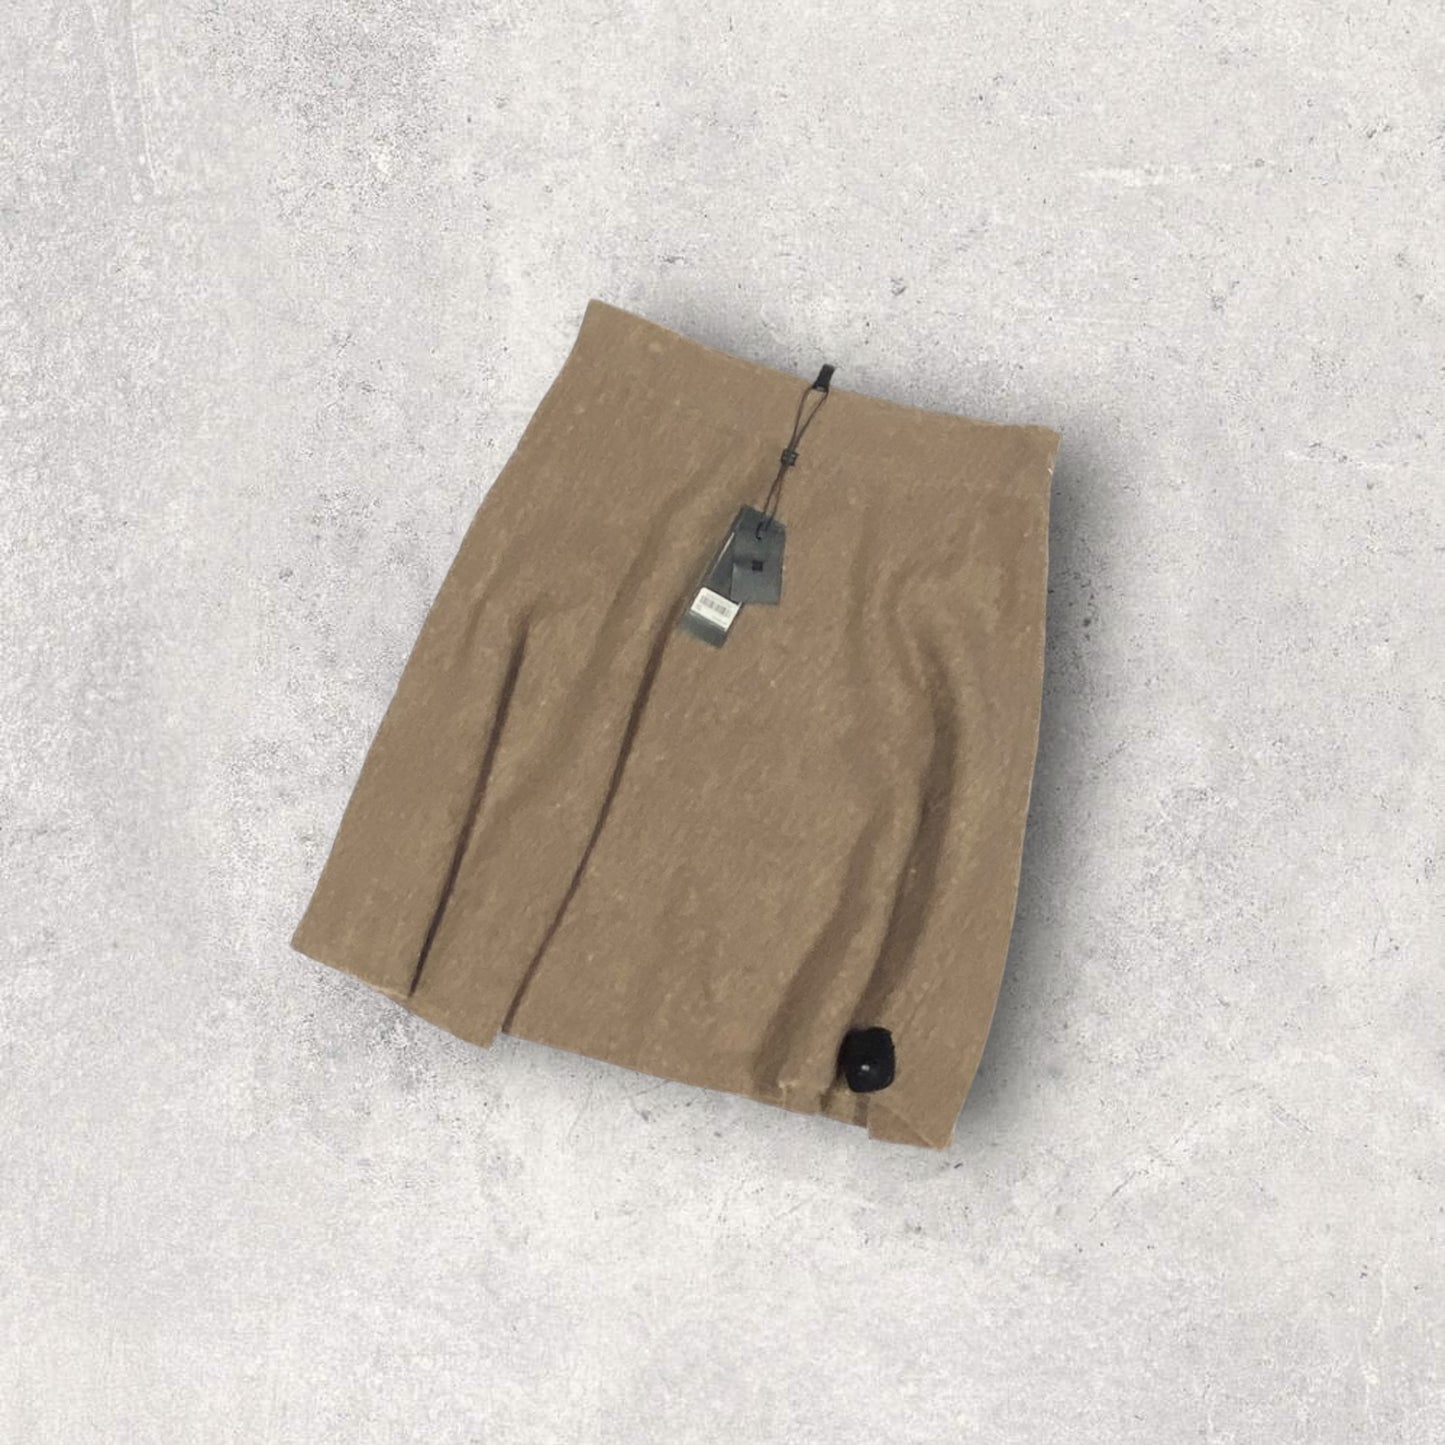 Skirt Mini & Short By Bcbgmaxazria  Size: L